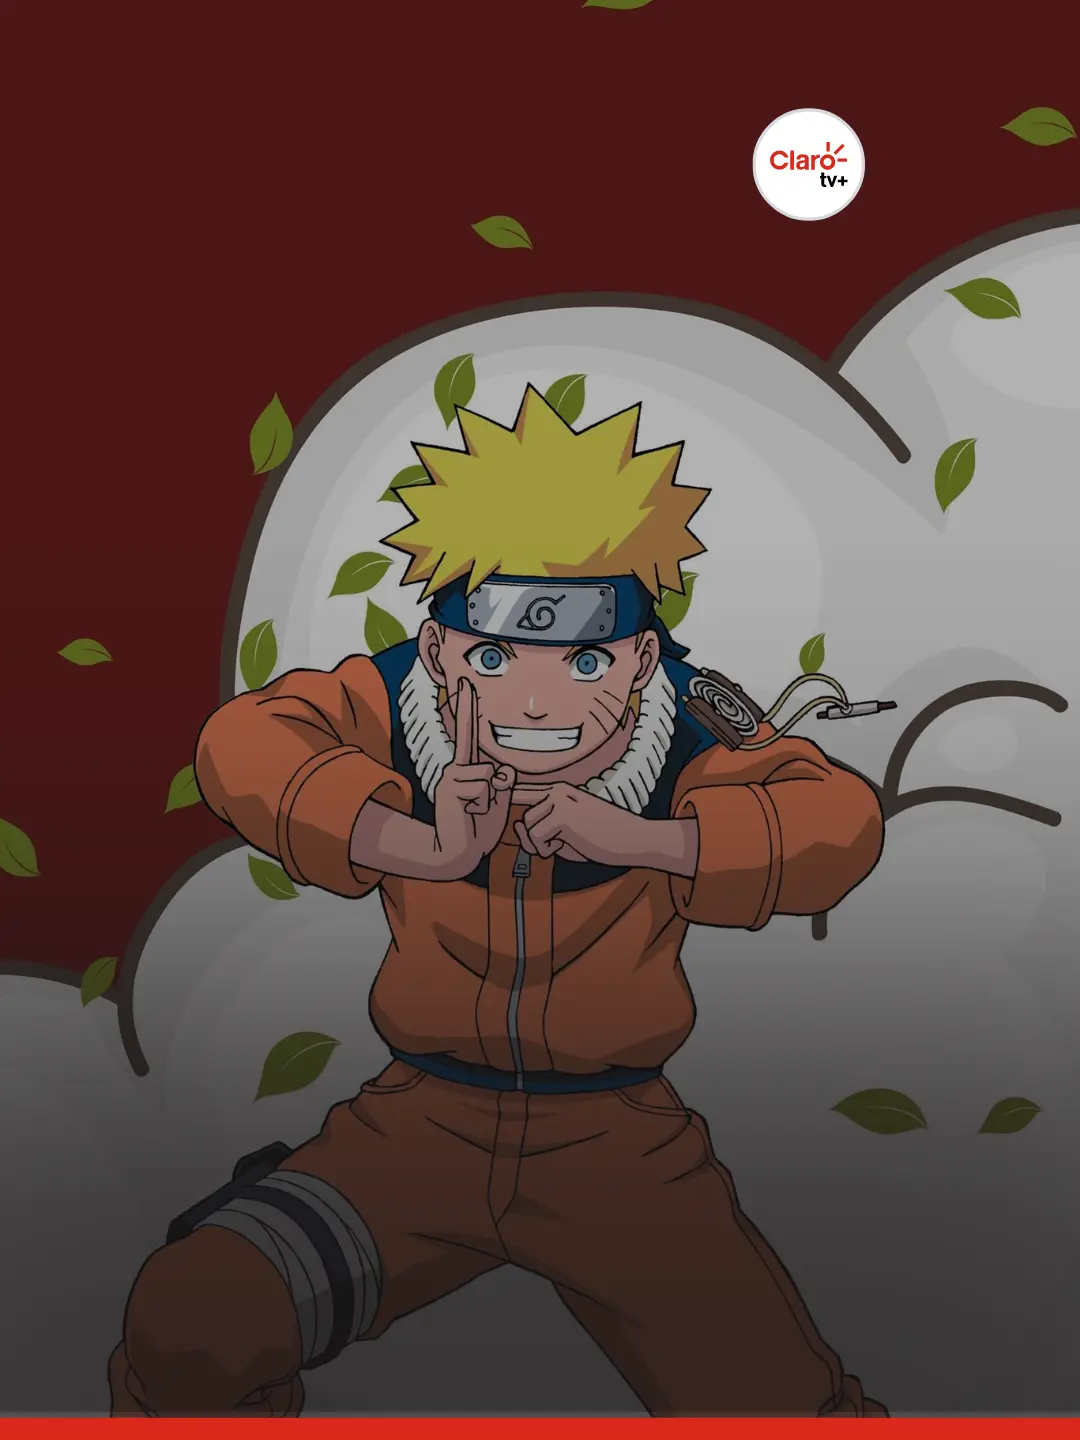 Assistir Naruto todos os episódios - BR Animes Online